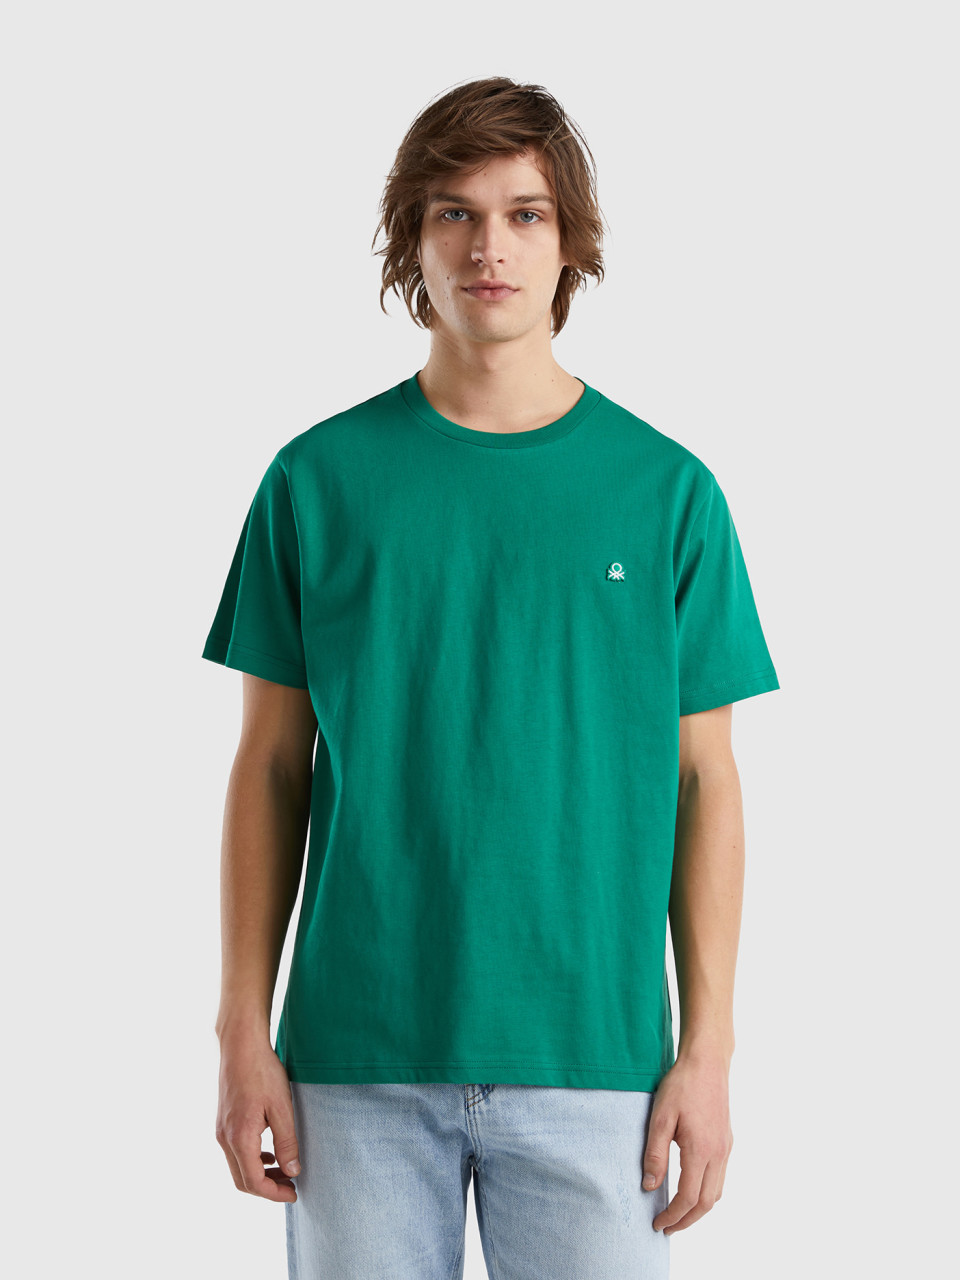 Benetton, Camiseta Básica De 100 % Algodón Orgánico, Verde Oscuro, Hombre